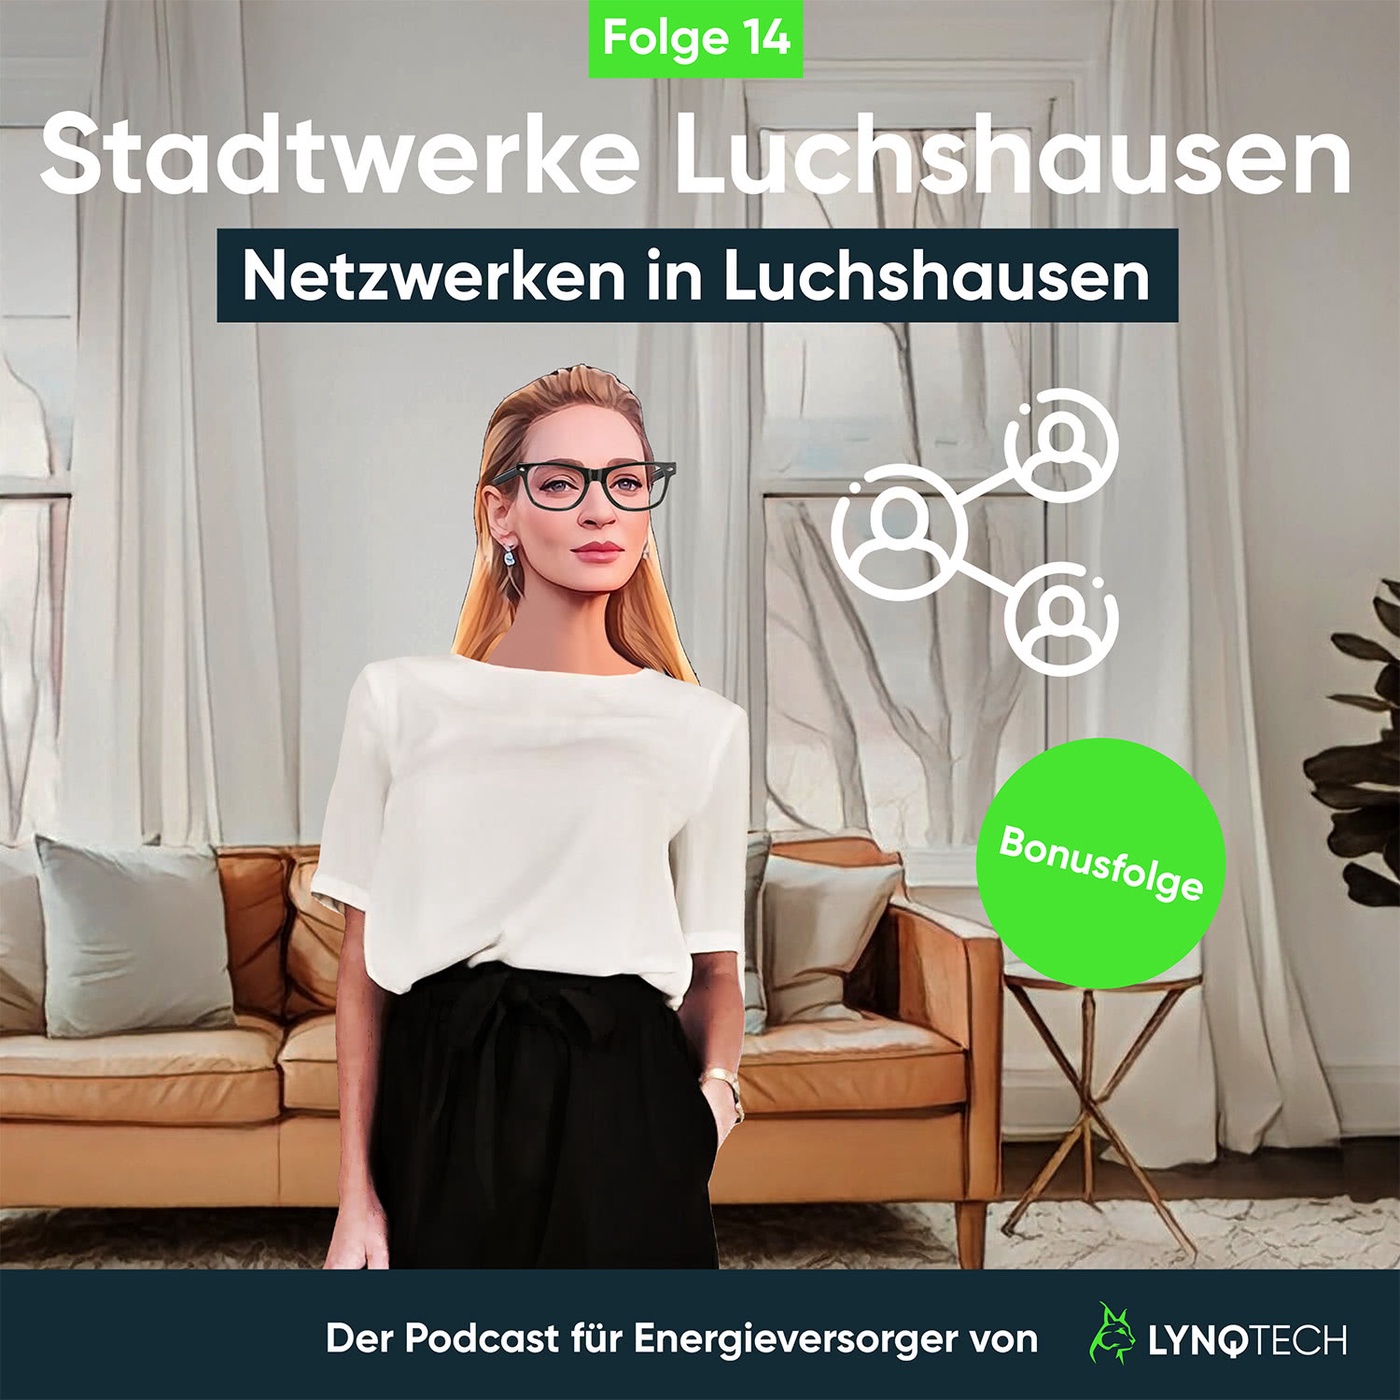 14 Netzwerken in Luchshausen - Bonusfolge